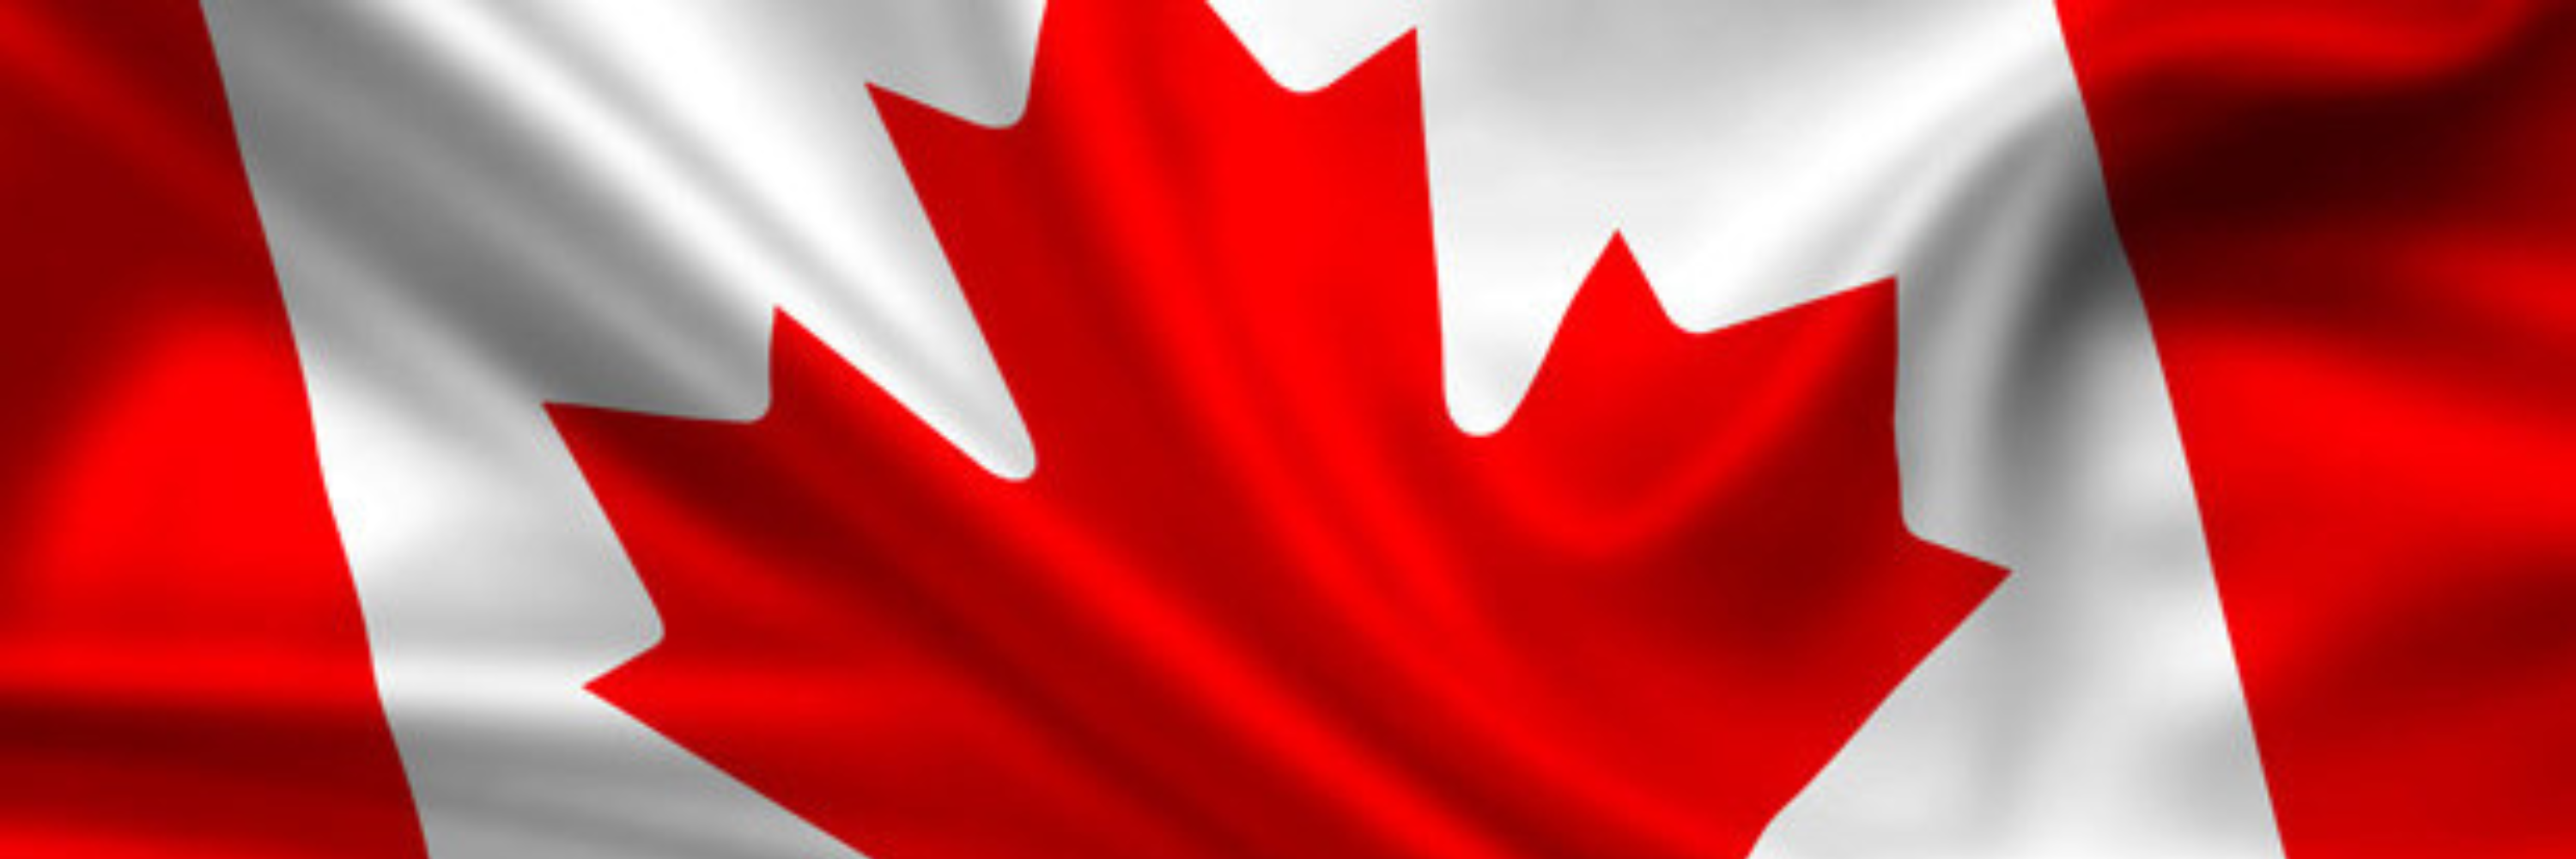 Canada Legal Lexicon